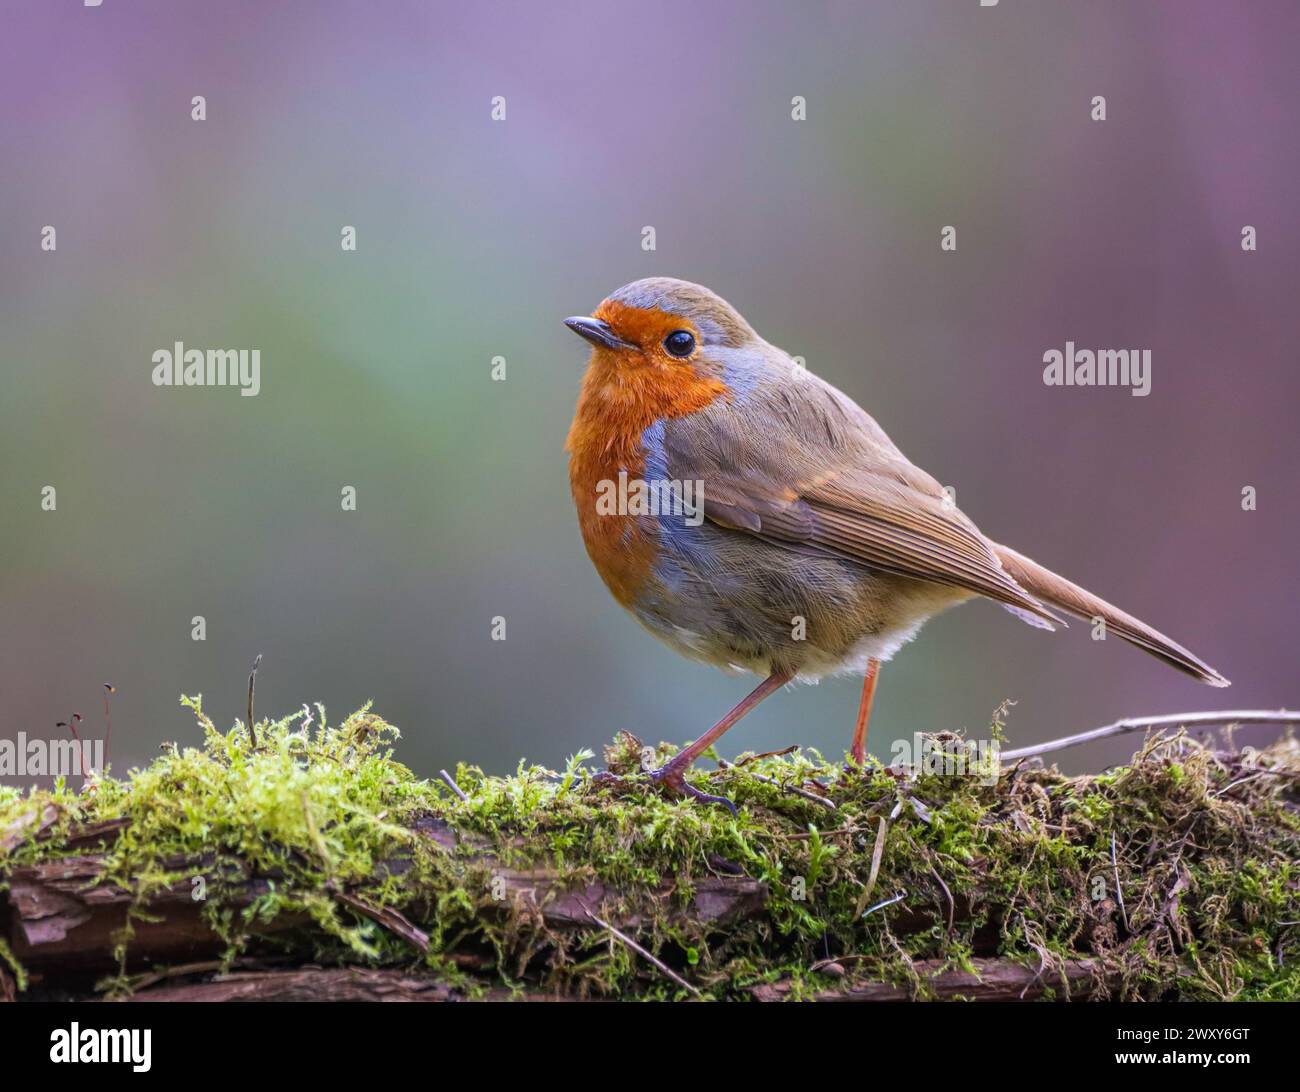 Eine selektive Fokusaufnahme eines robin Vogels, der auf einem Baumzweig sitzt Stockfoto